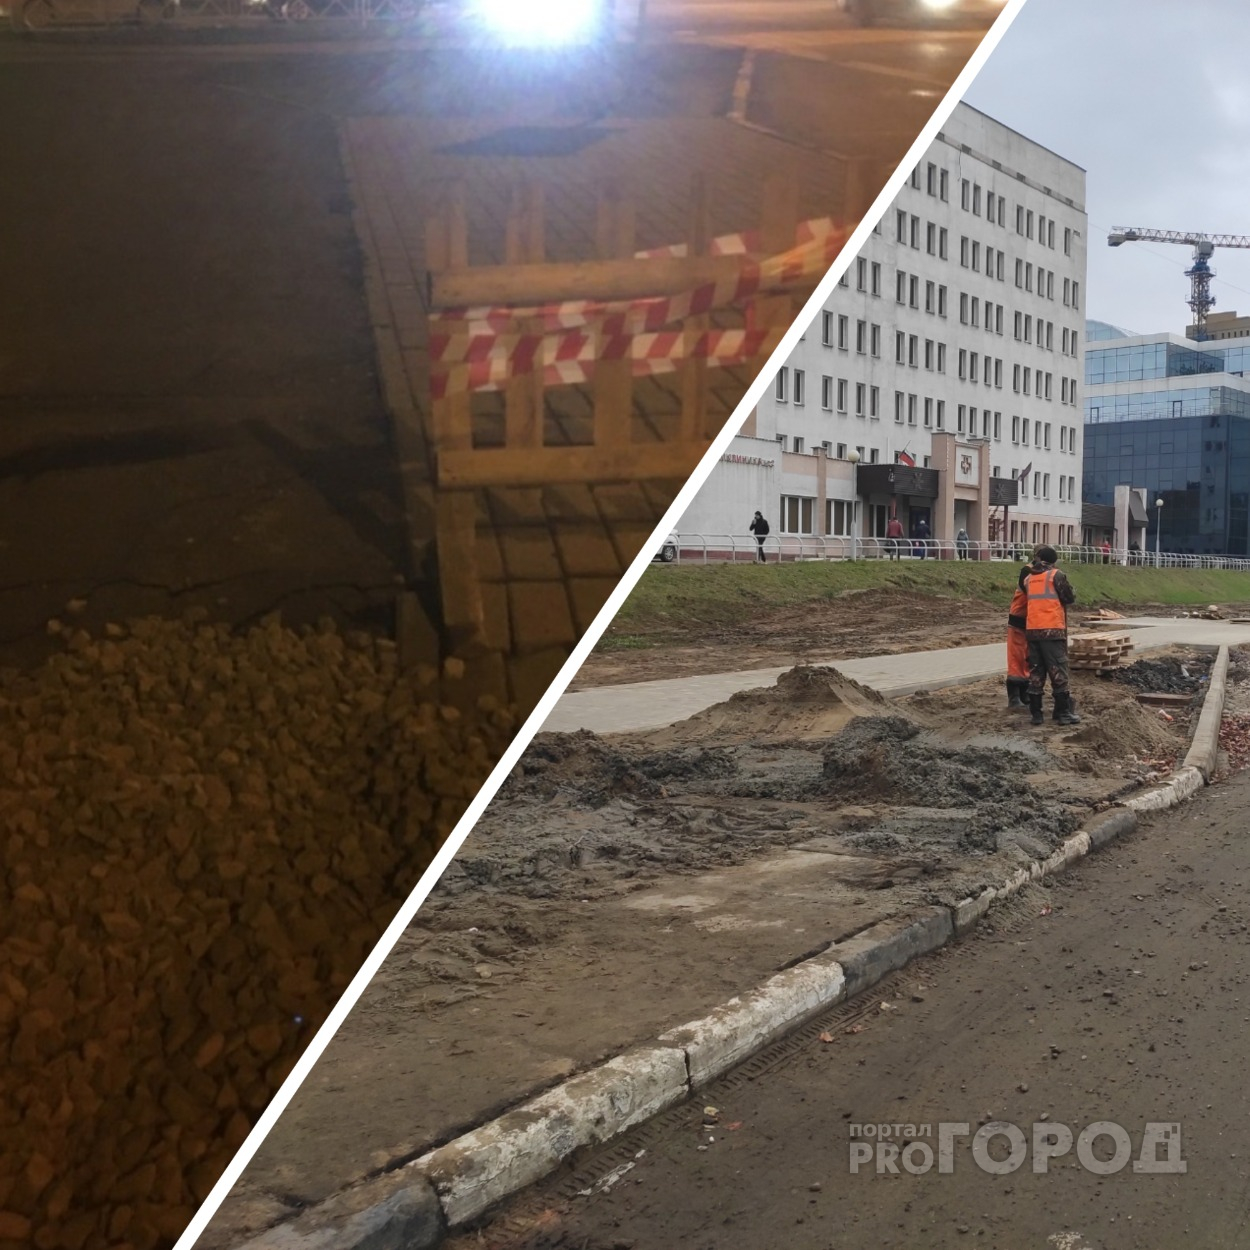 "Кто провалится, как в 2017 году": в Ярославле на дороге снова расползалась яма